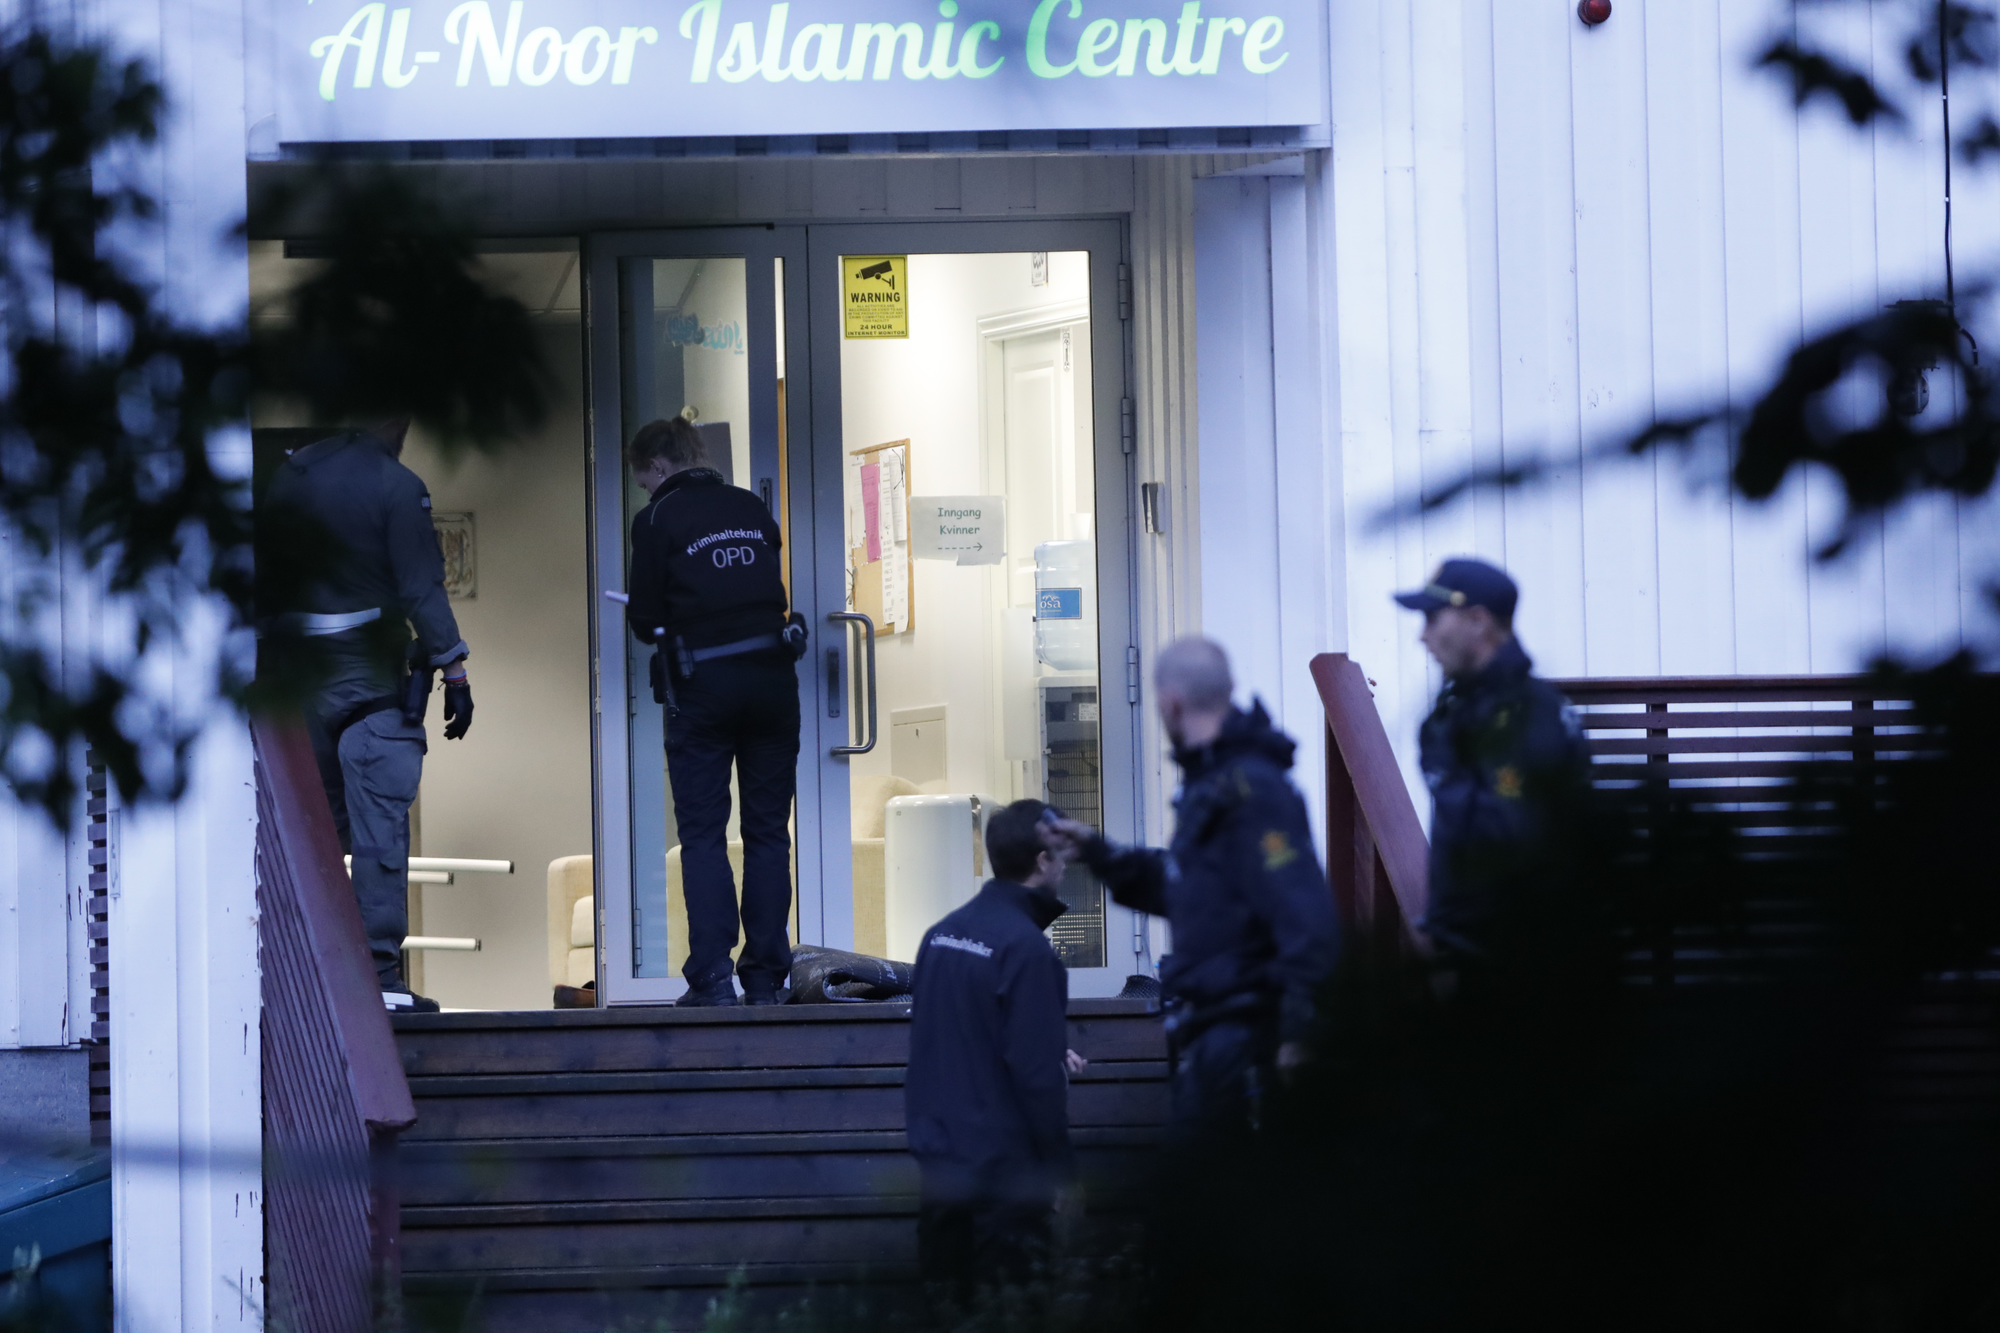 Bærum 20190810. 
Politiet jobber på åstedet etter en skyteepisode i Al-Noor Islamic Centre moskéen i Bærum